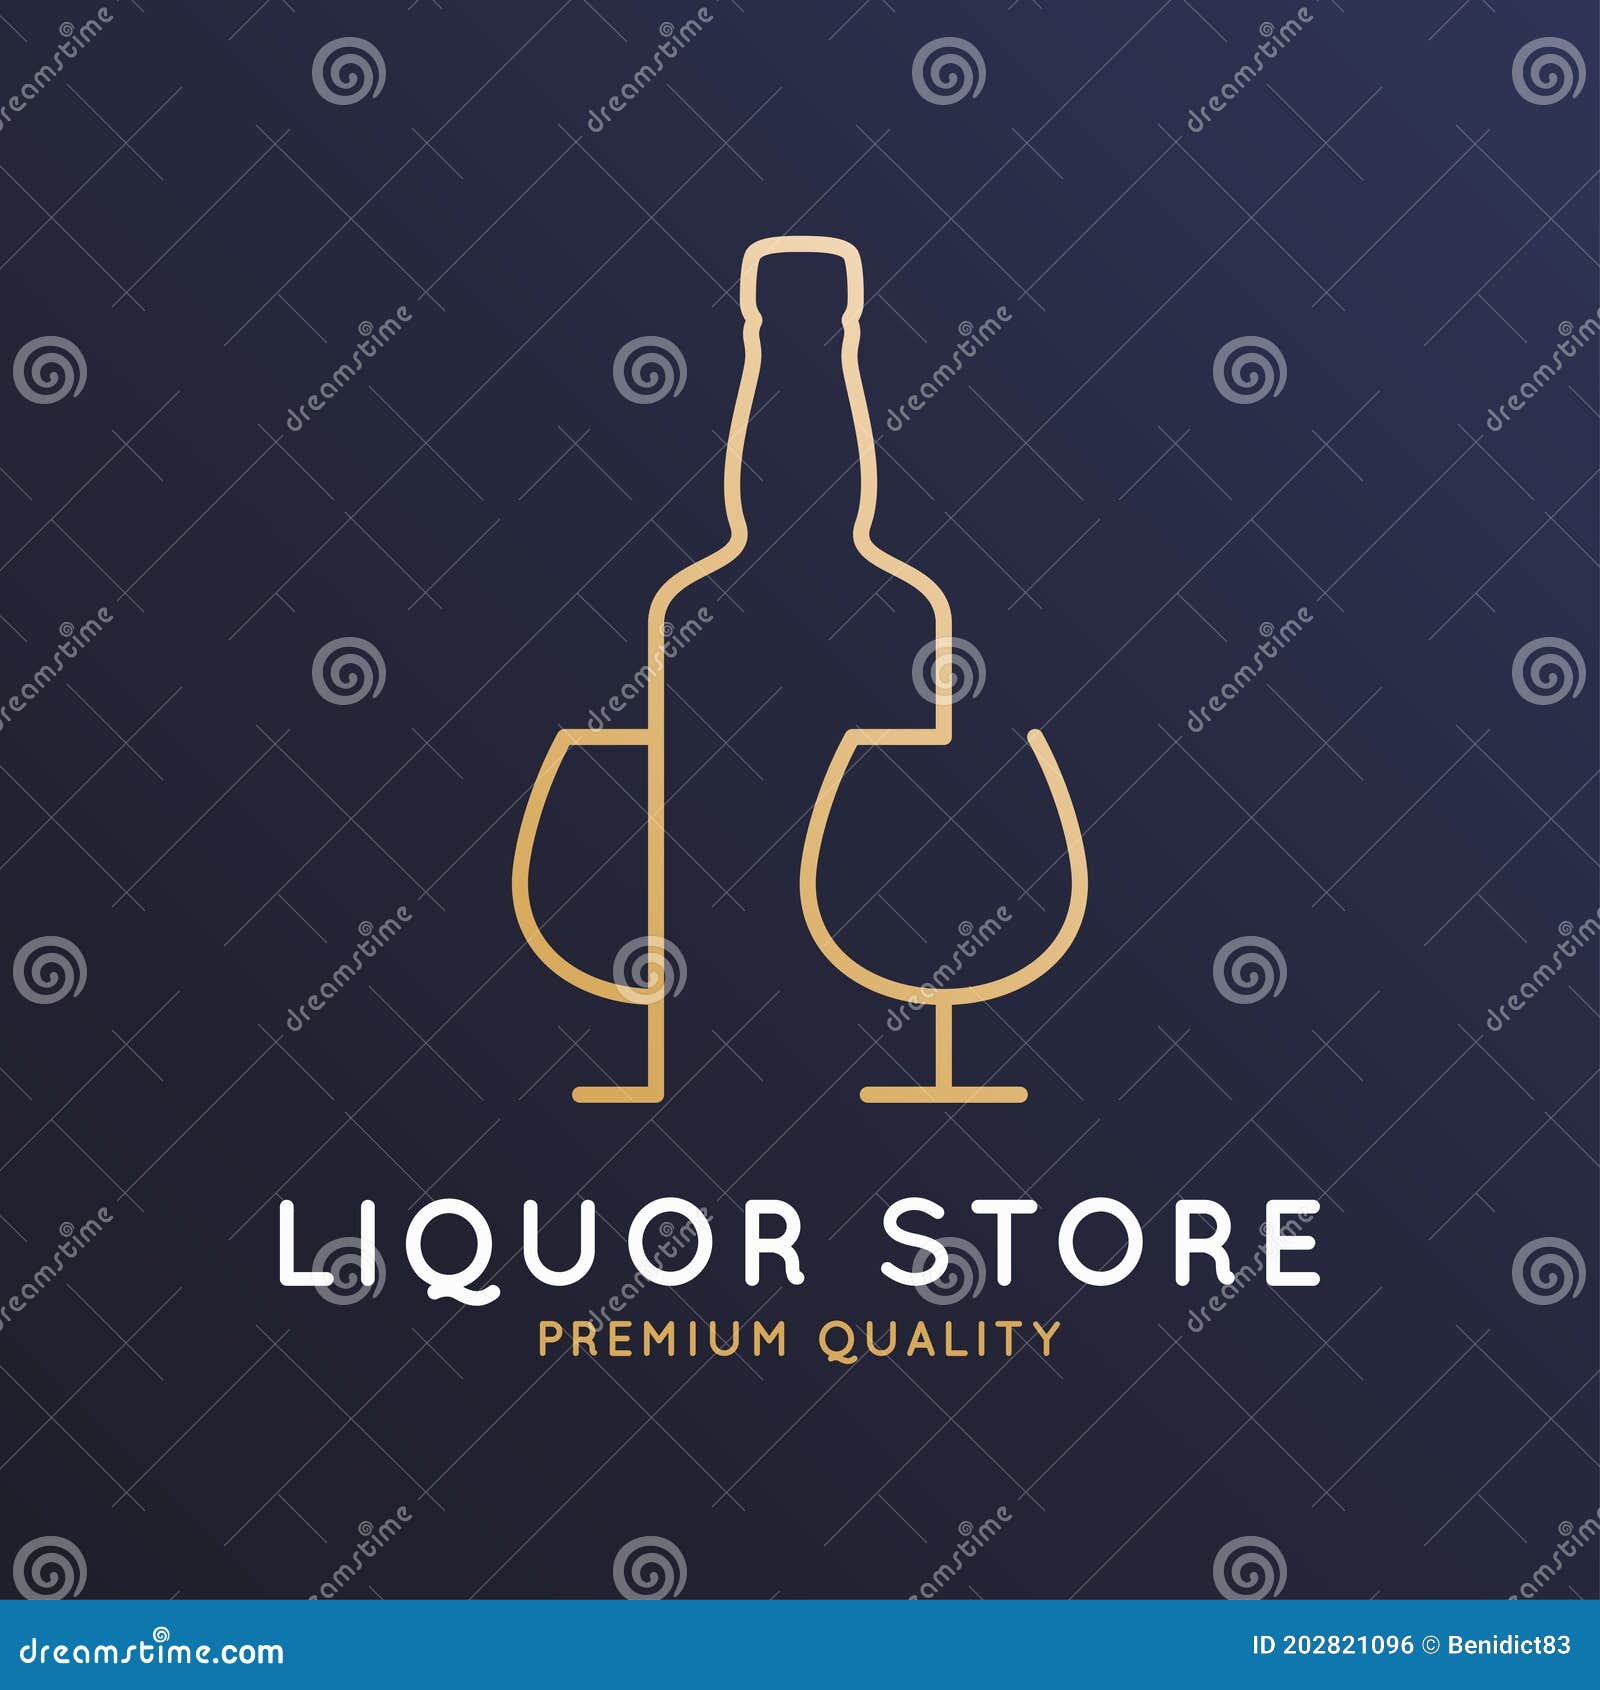 liquor store logo. bottle whiskey, rum or brandy